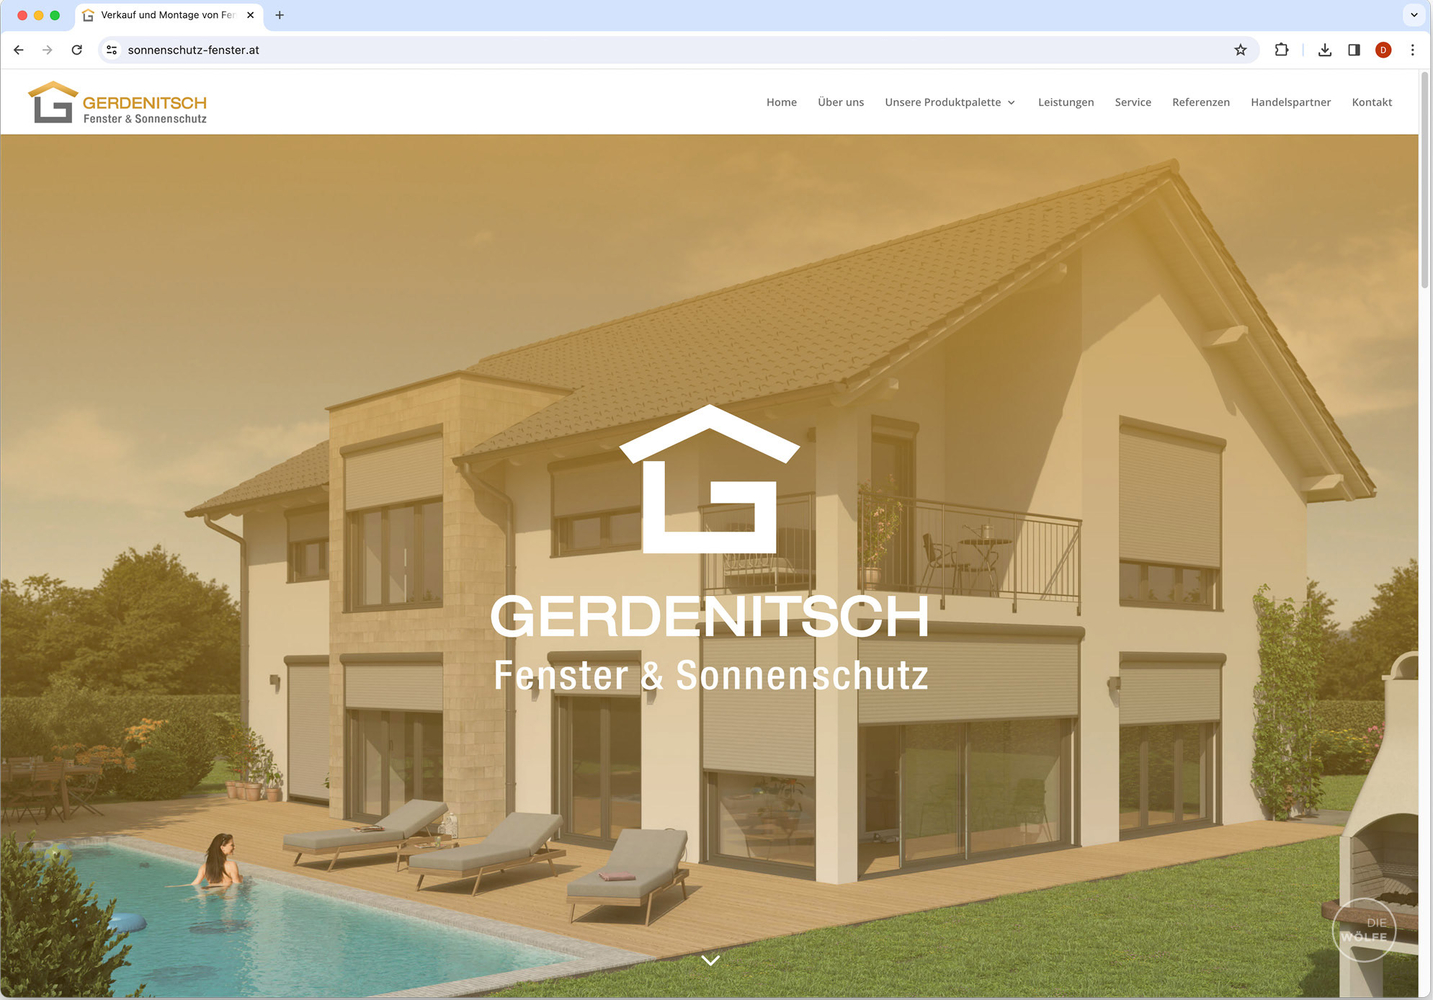 Gerdenitsch Website